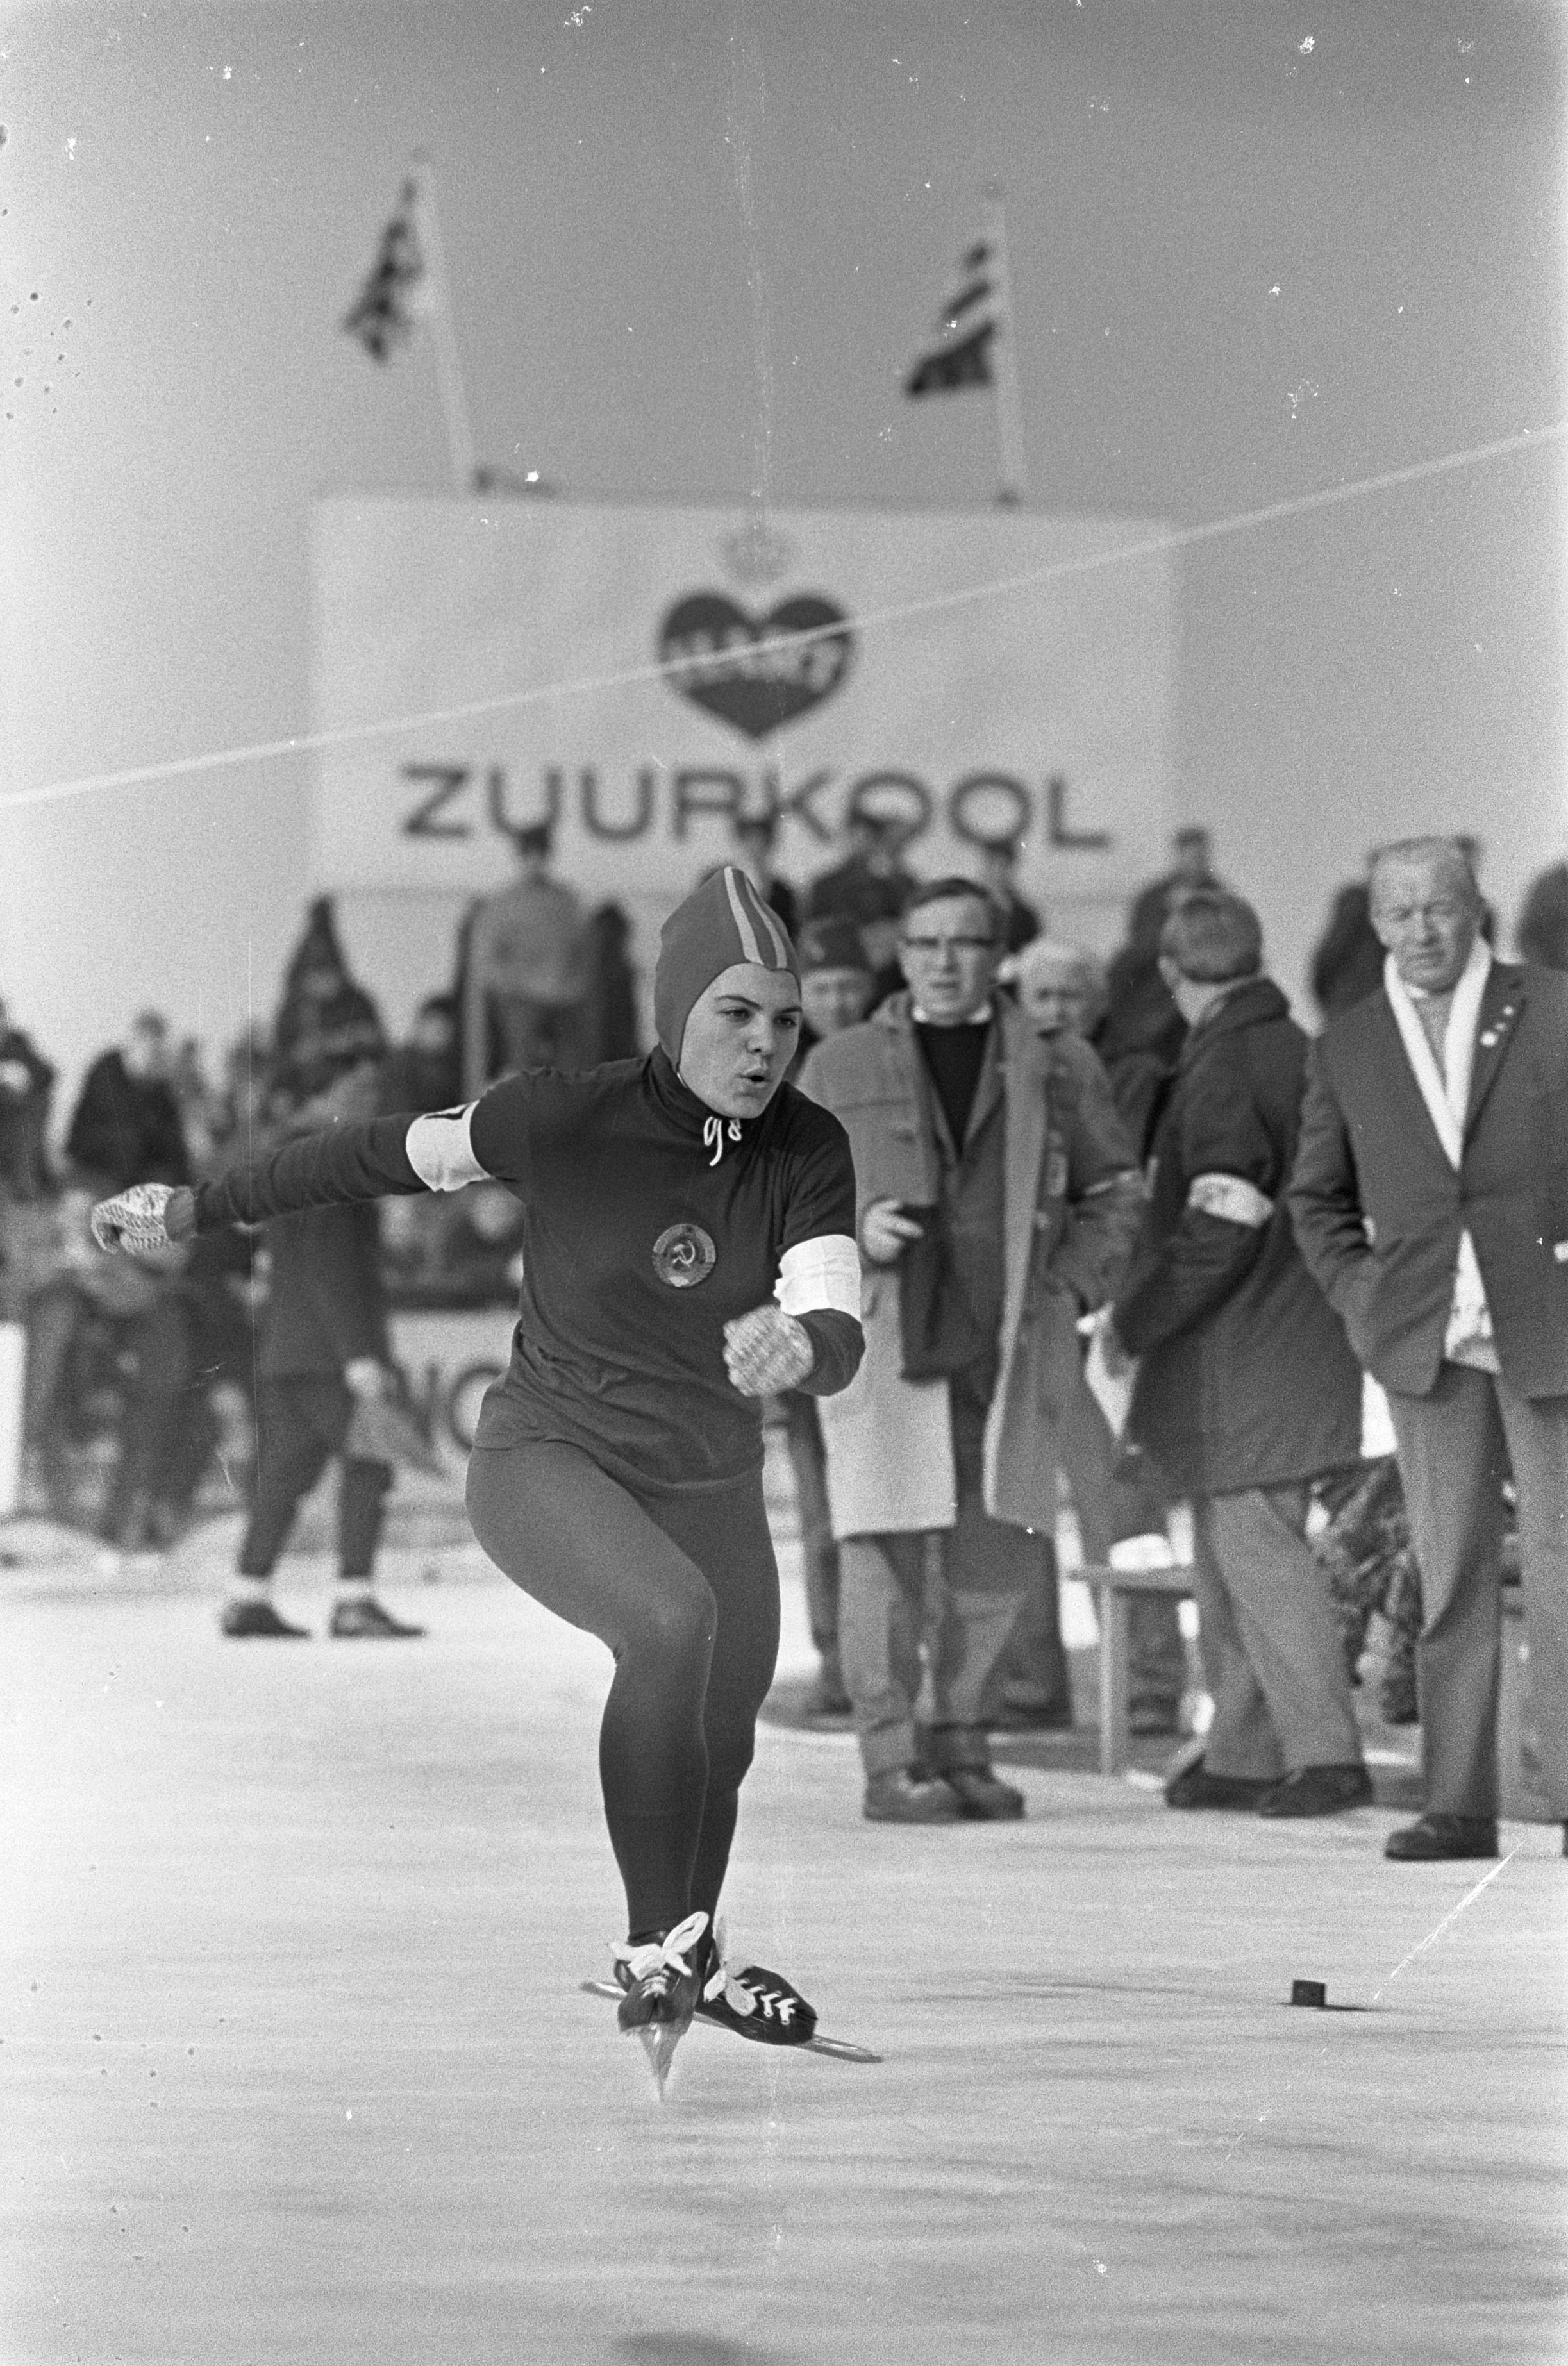 Schrijft een rapport Nutteloos tekst File:Wereldkampioenschap schaatsen allround vrouwen, Sablina (Sovjet-Unie)  in aktie, Bestanddeelnr 920-0955.jpg - Wikimedia Commons